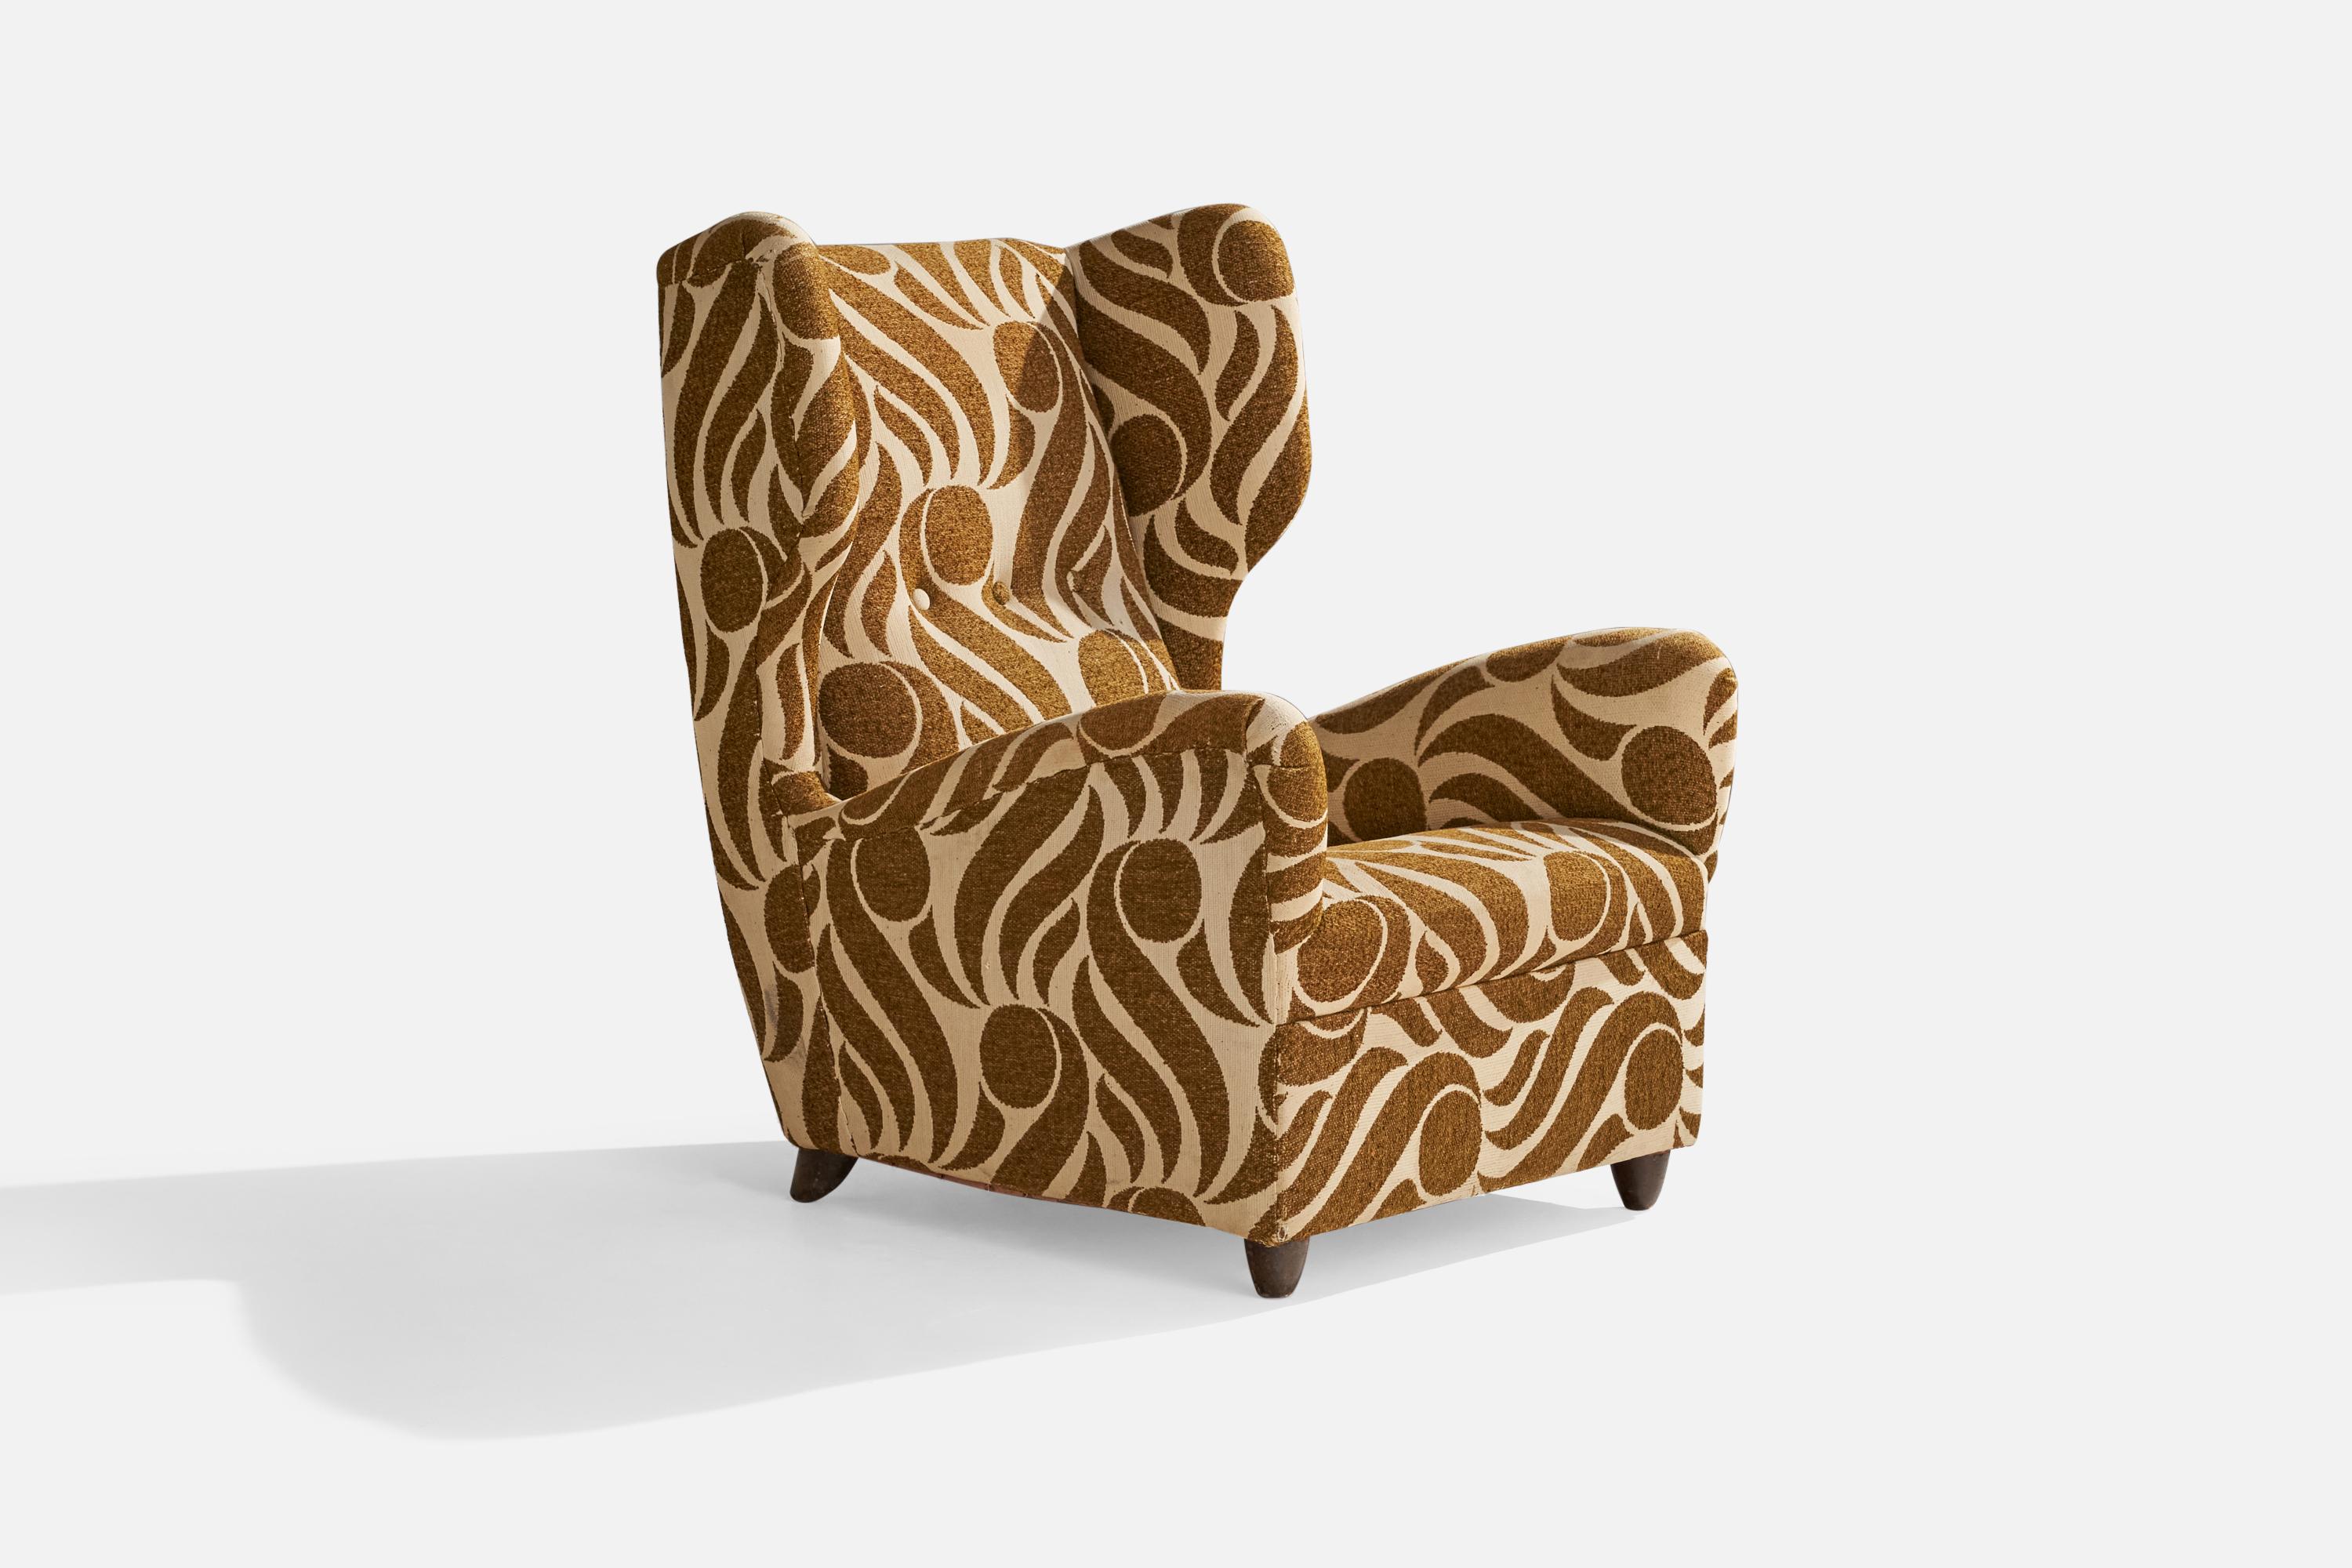 Sessel aus braunem und beigem Stoff und dunkel gebeiztem Holz, entworfen und hergestellt in Italien, 1940er Jahre.

Sitzhöhe 15